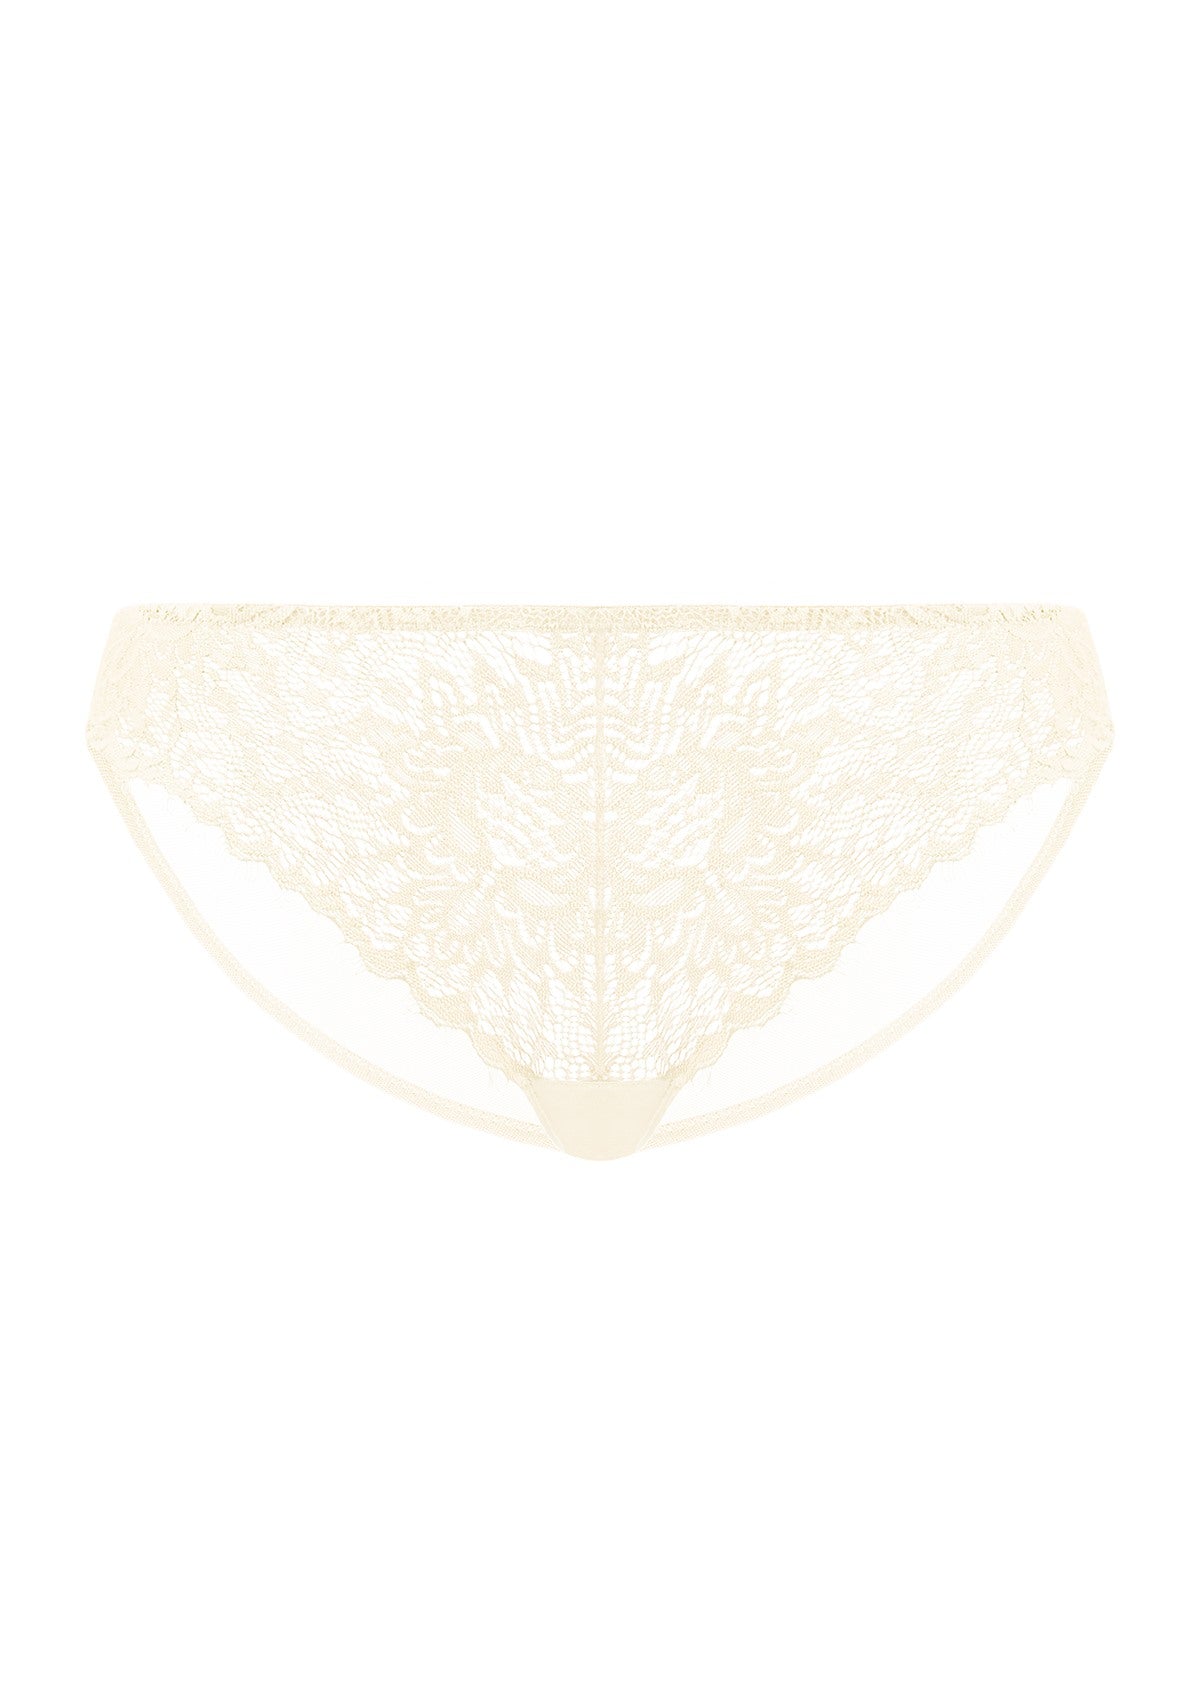 HSIA Sunflower Exquisite Champagne Lace Bikini Underwear - XL / Champagne